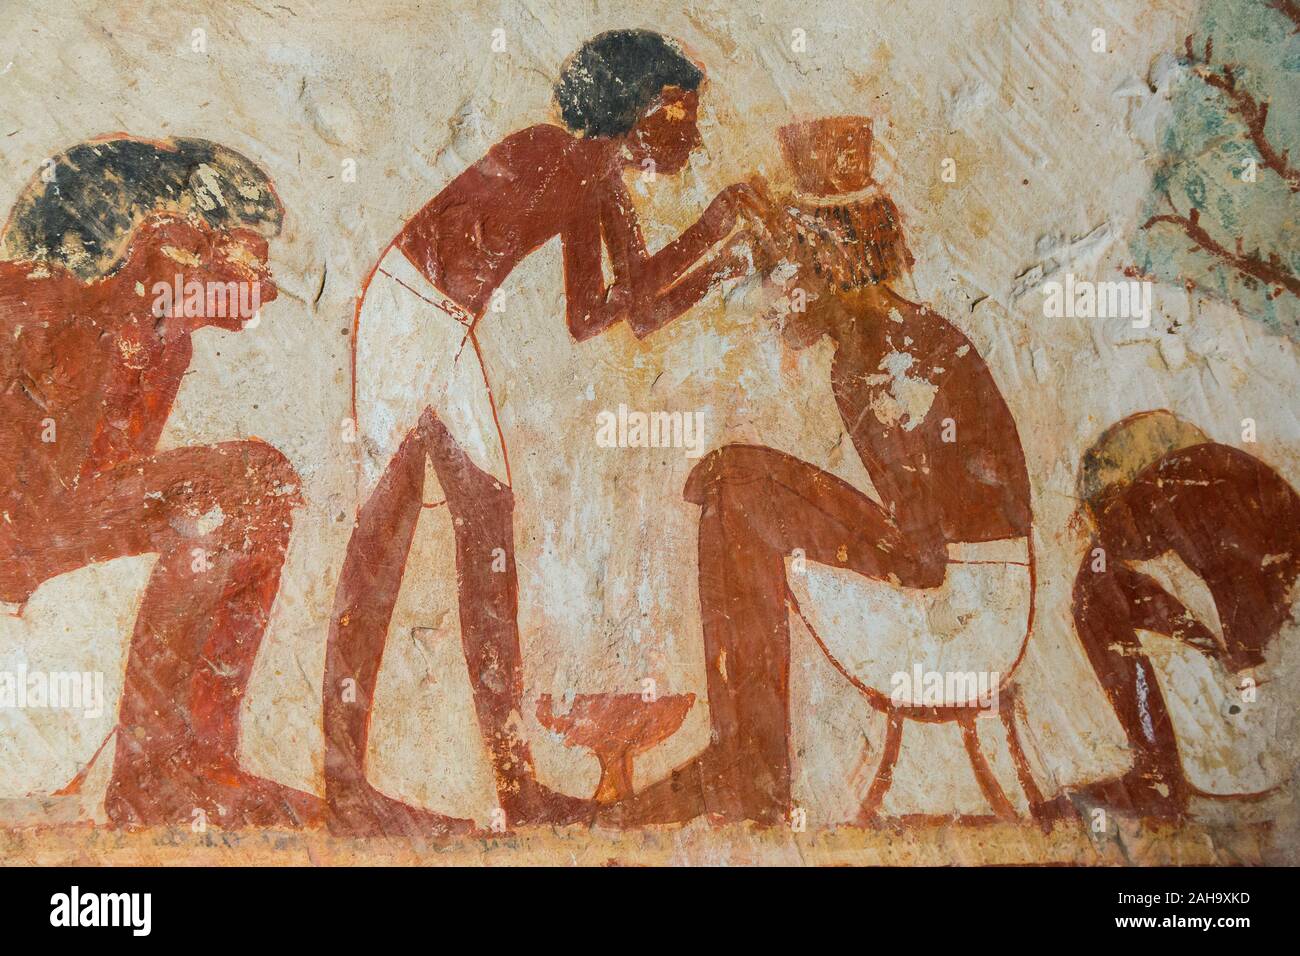 UNESCO Welterbe, Theben in Ägypten, das Tal der Adligen, Grab von userhat (Nummer 56, da es andere Grab Besitzer Userhat genannt). Ein Friseur. Stockfoto